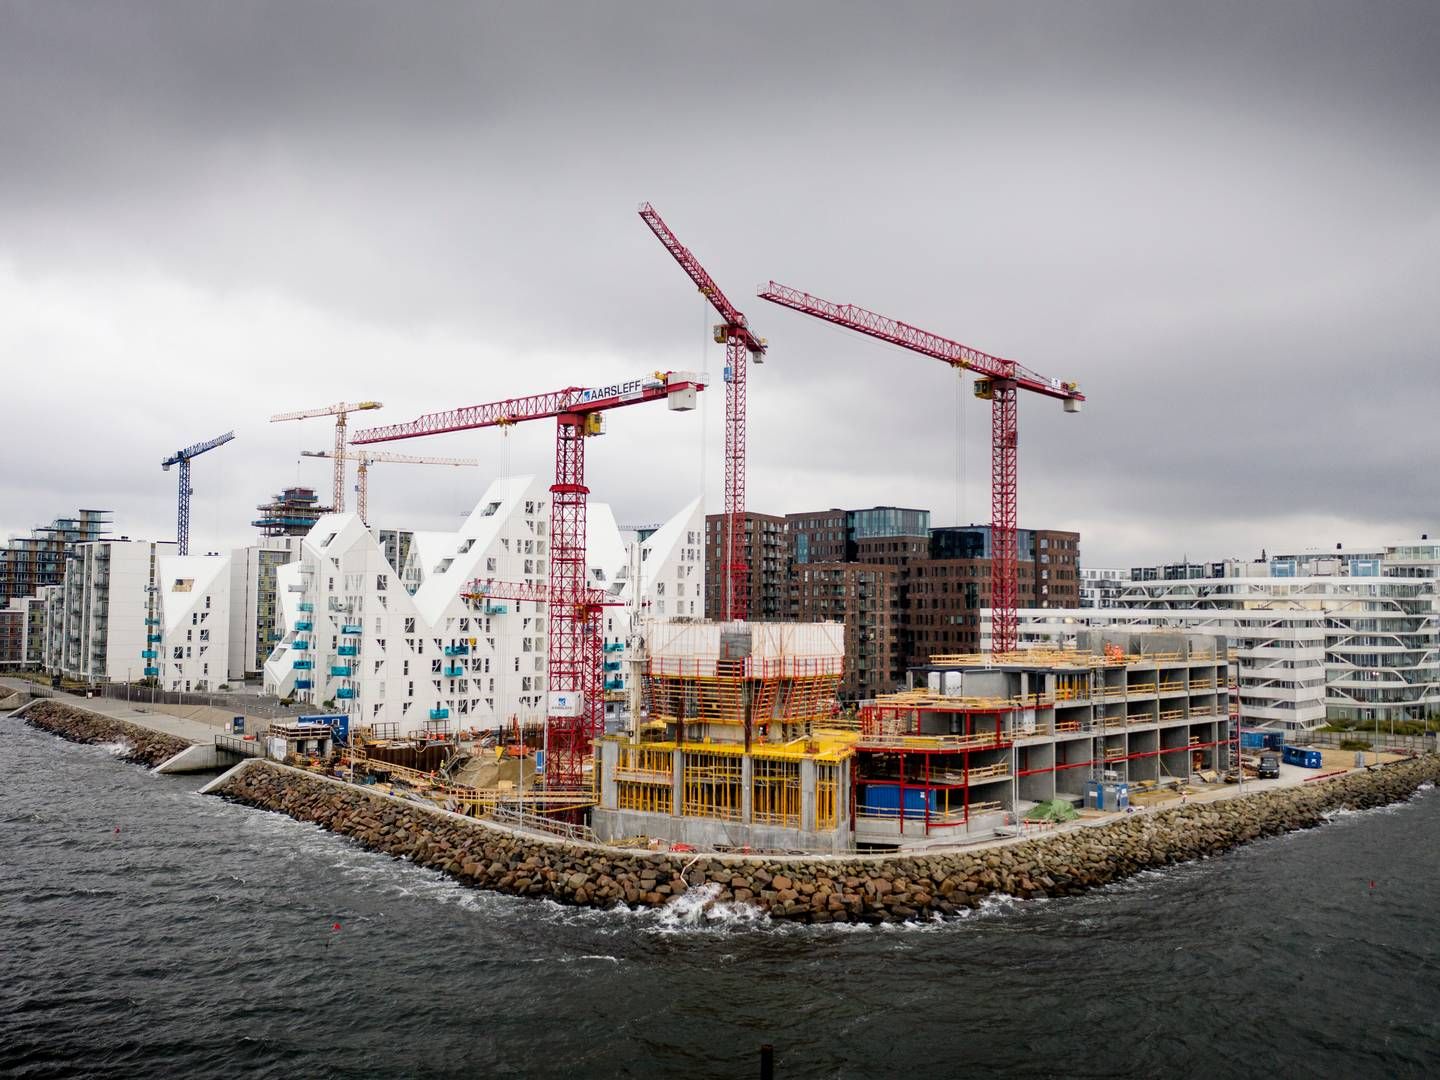 Uenigheder i byggebranchen giver travlhed hos advokater. Arkivfoto fra Aarhus Ø.